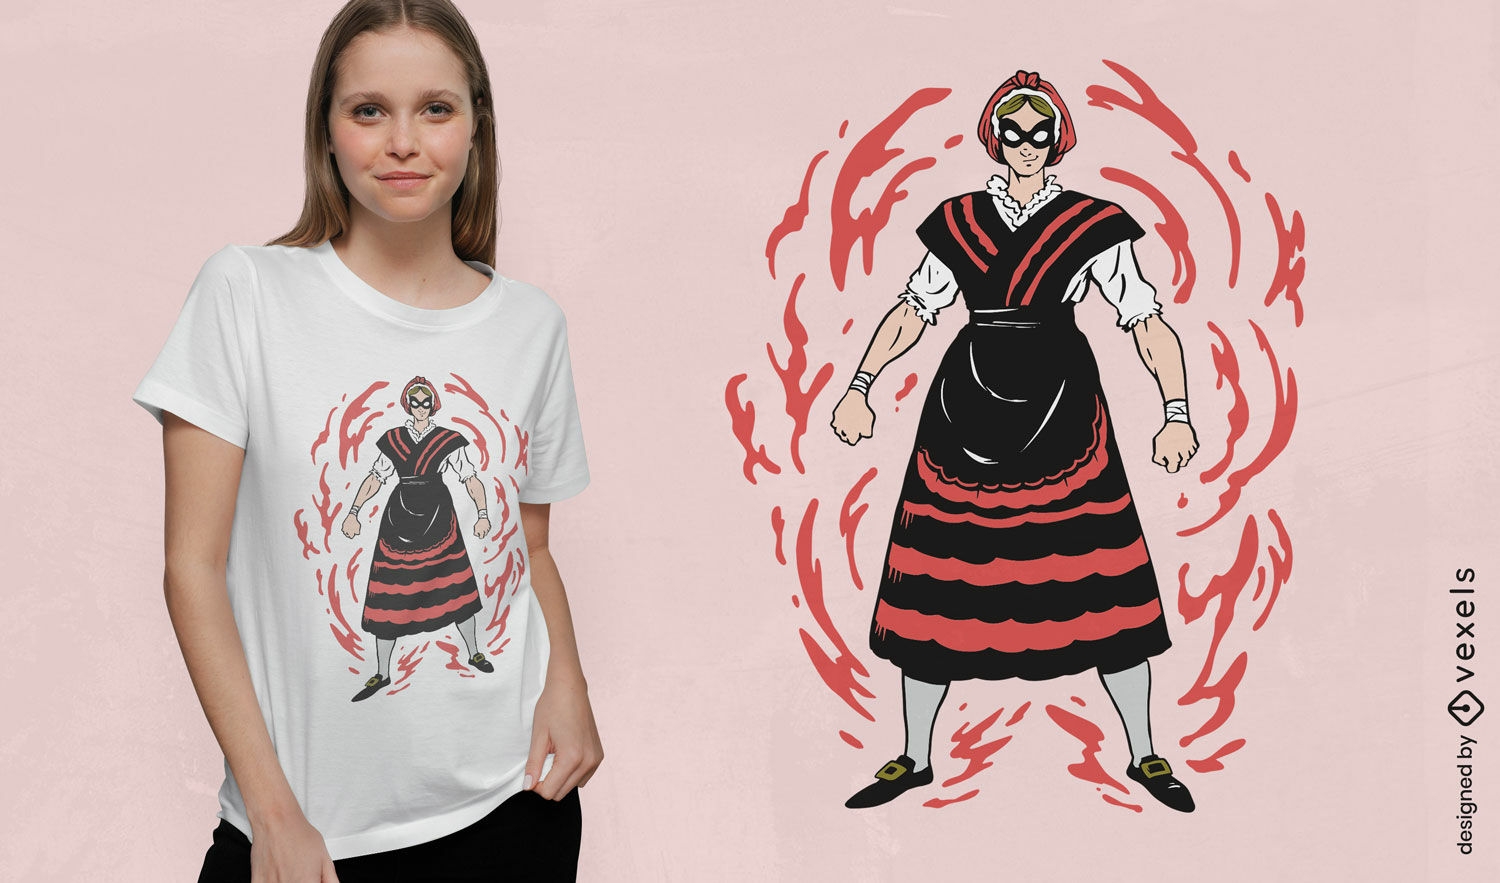 Galicisches Superhelden-Mädchen-T-Shirt-Design